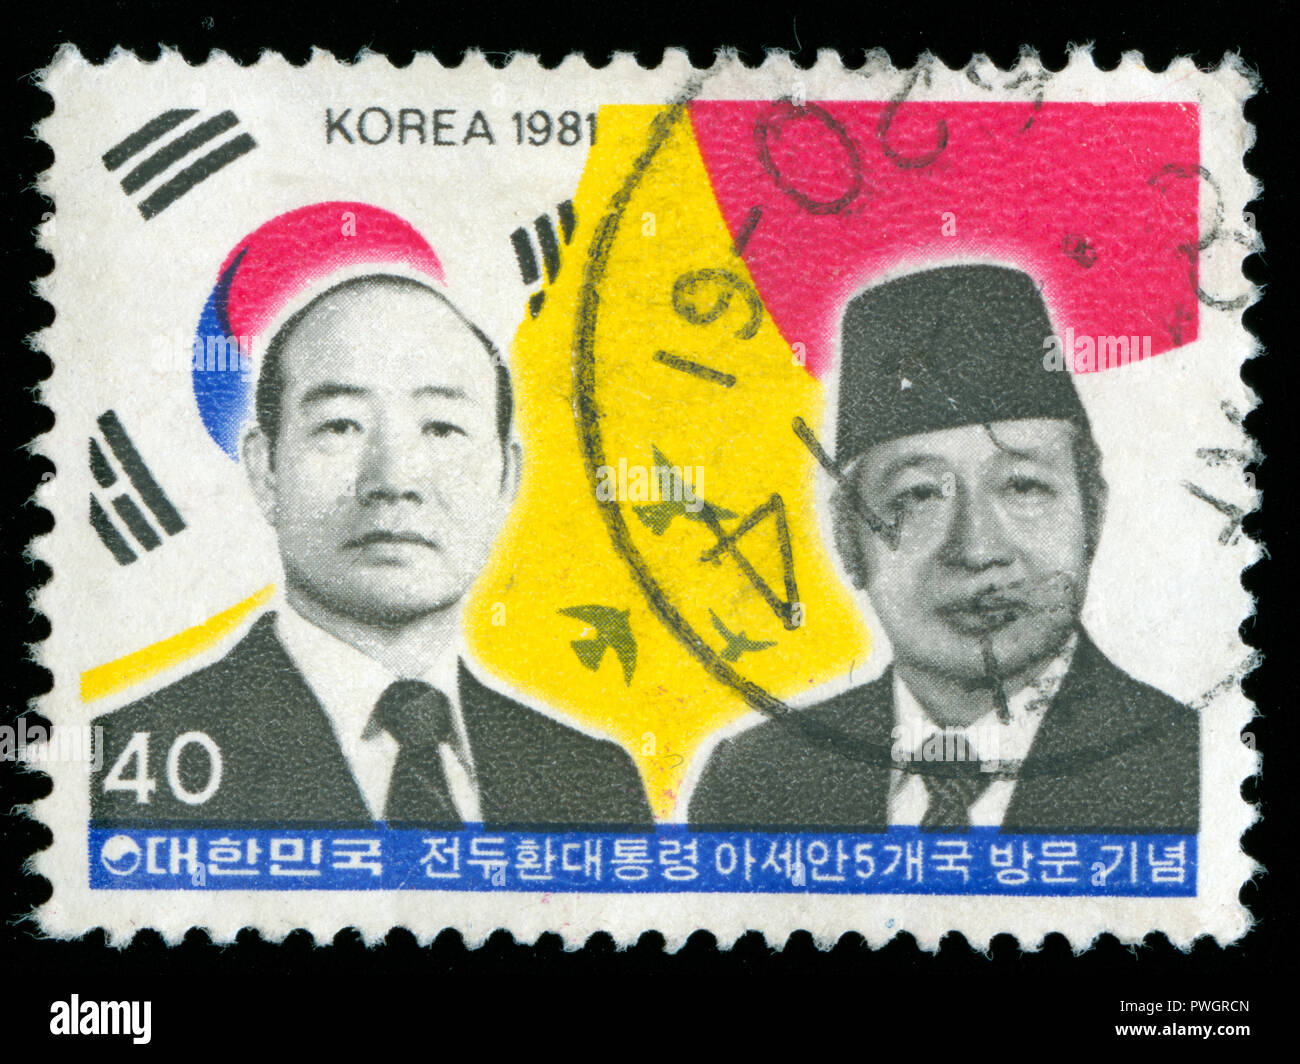 Timbre cachet de la Corée du Sud dans la visite du Président aux pays de l'ASEAN série émise en 1981 Banque D'Images